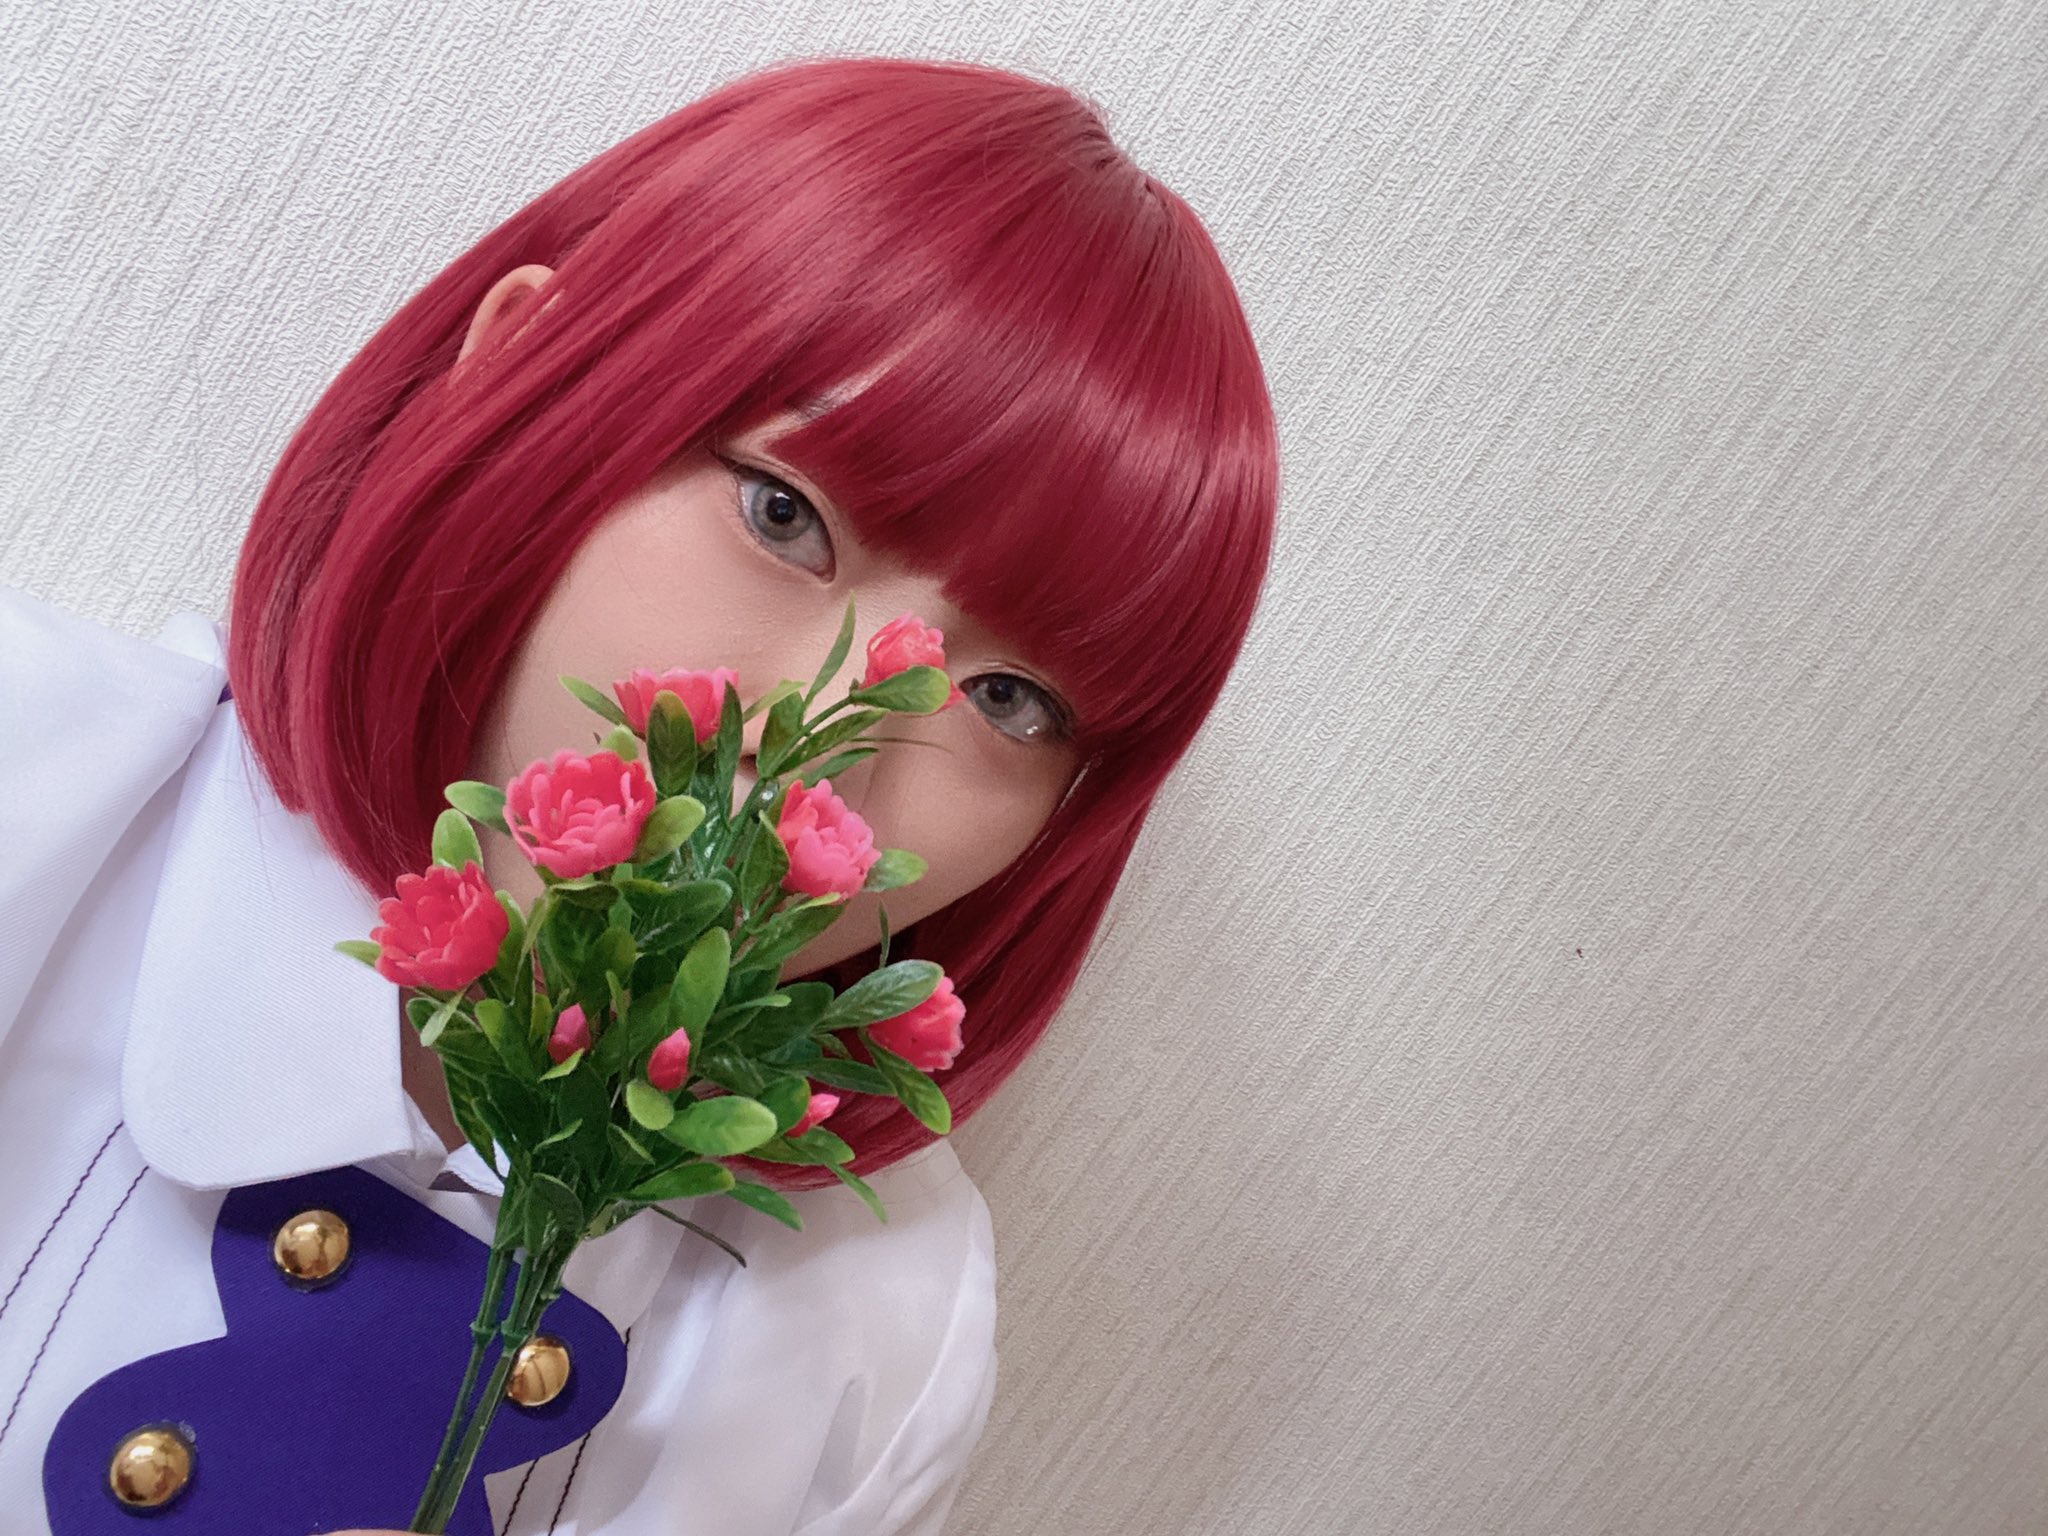 赤髪の白雪姫 OR #akagami_anime - Twitter Search / Twitter